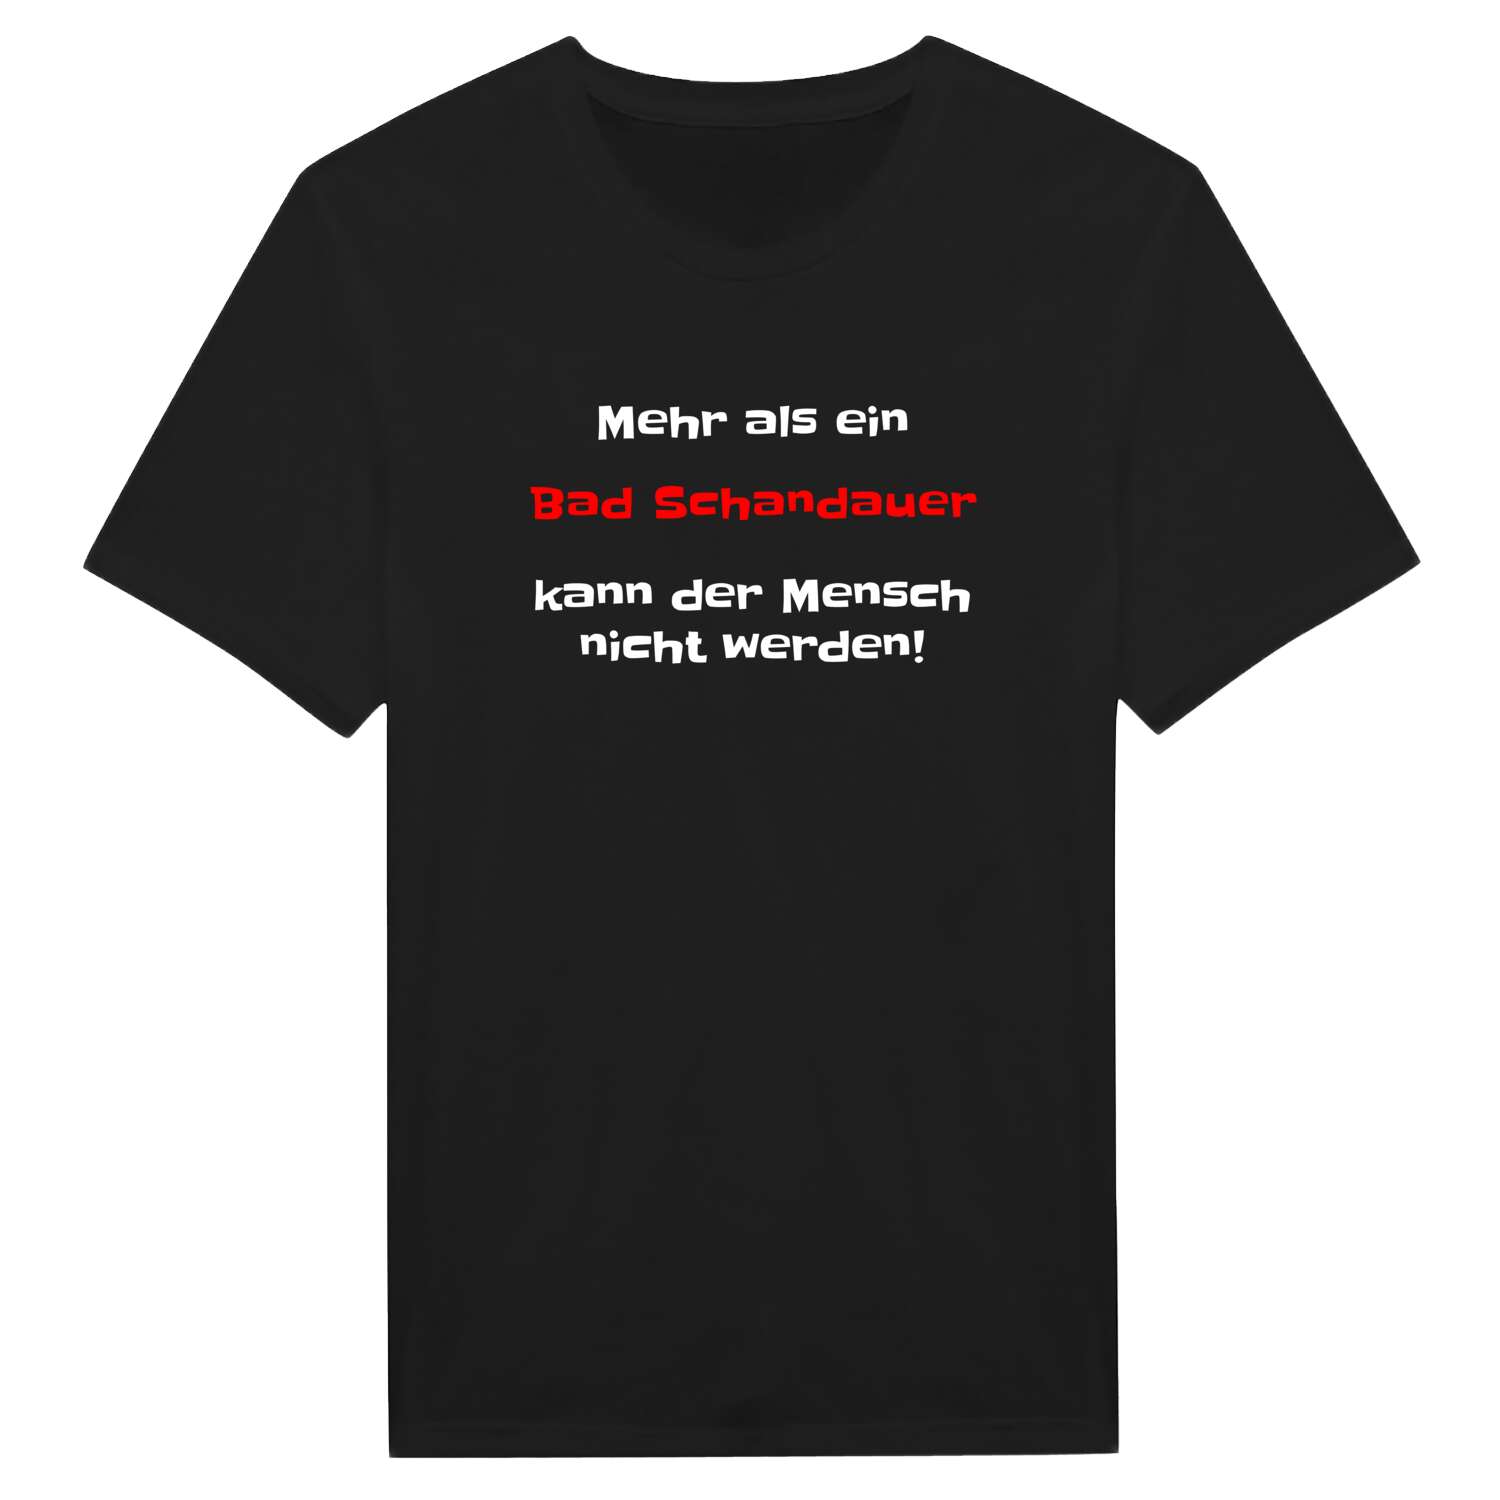 Bad Schandau T-Shirt »Mehr als ein«